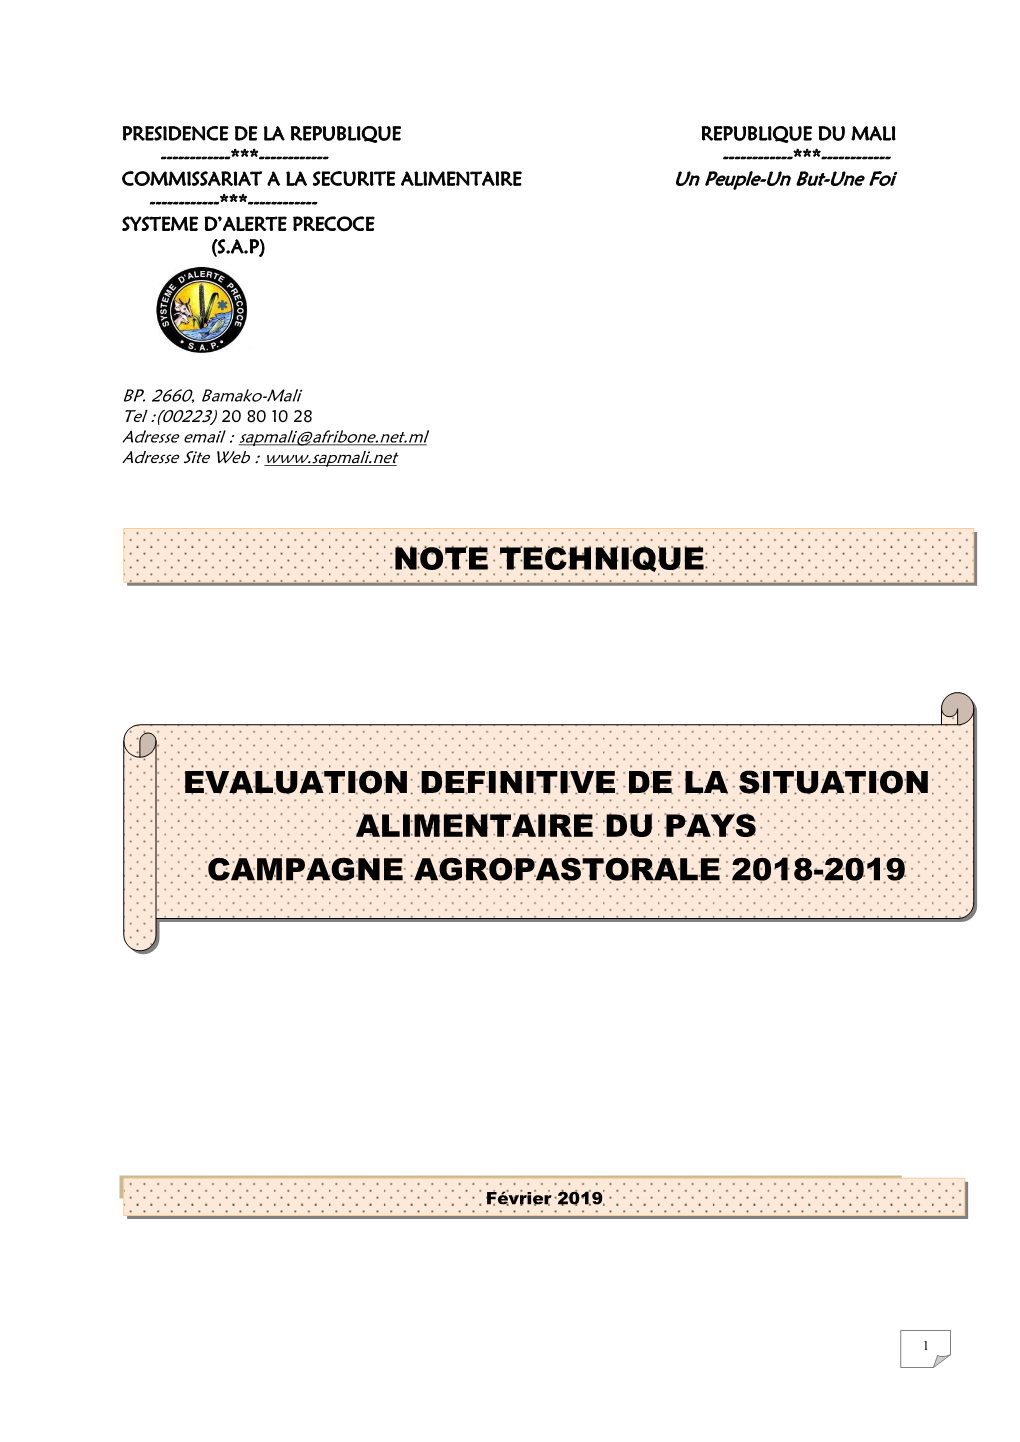 Evaluation Definitive De La Situation Alimentaire Du Pays Campagne Agropastorale 2018-2019